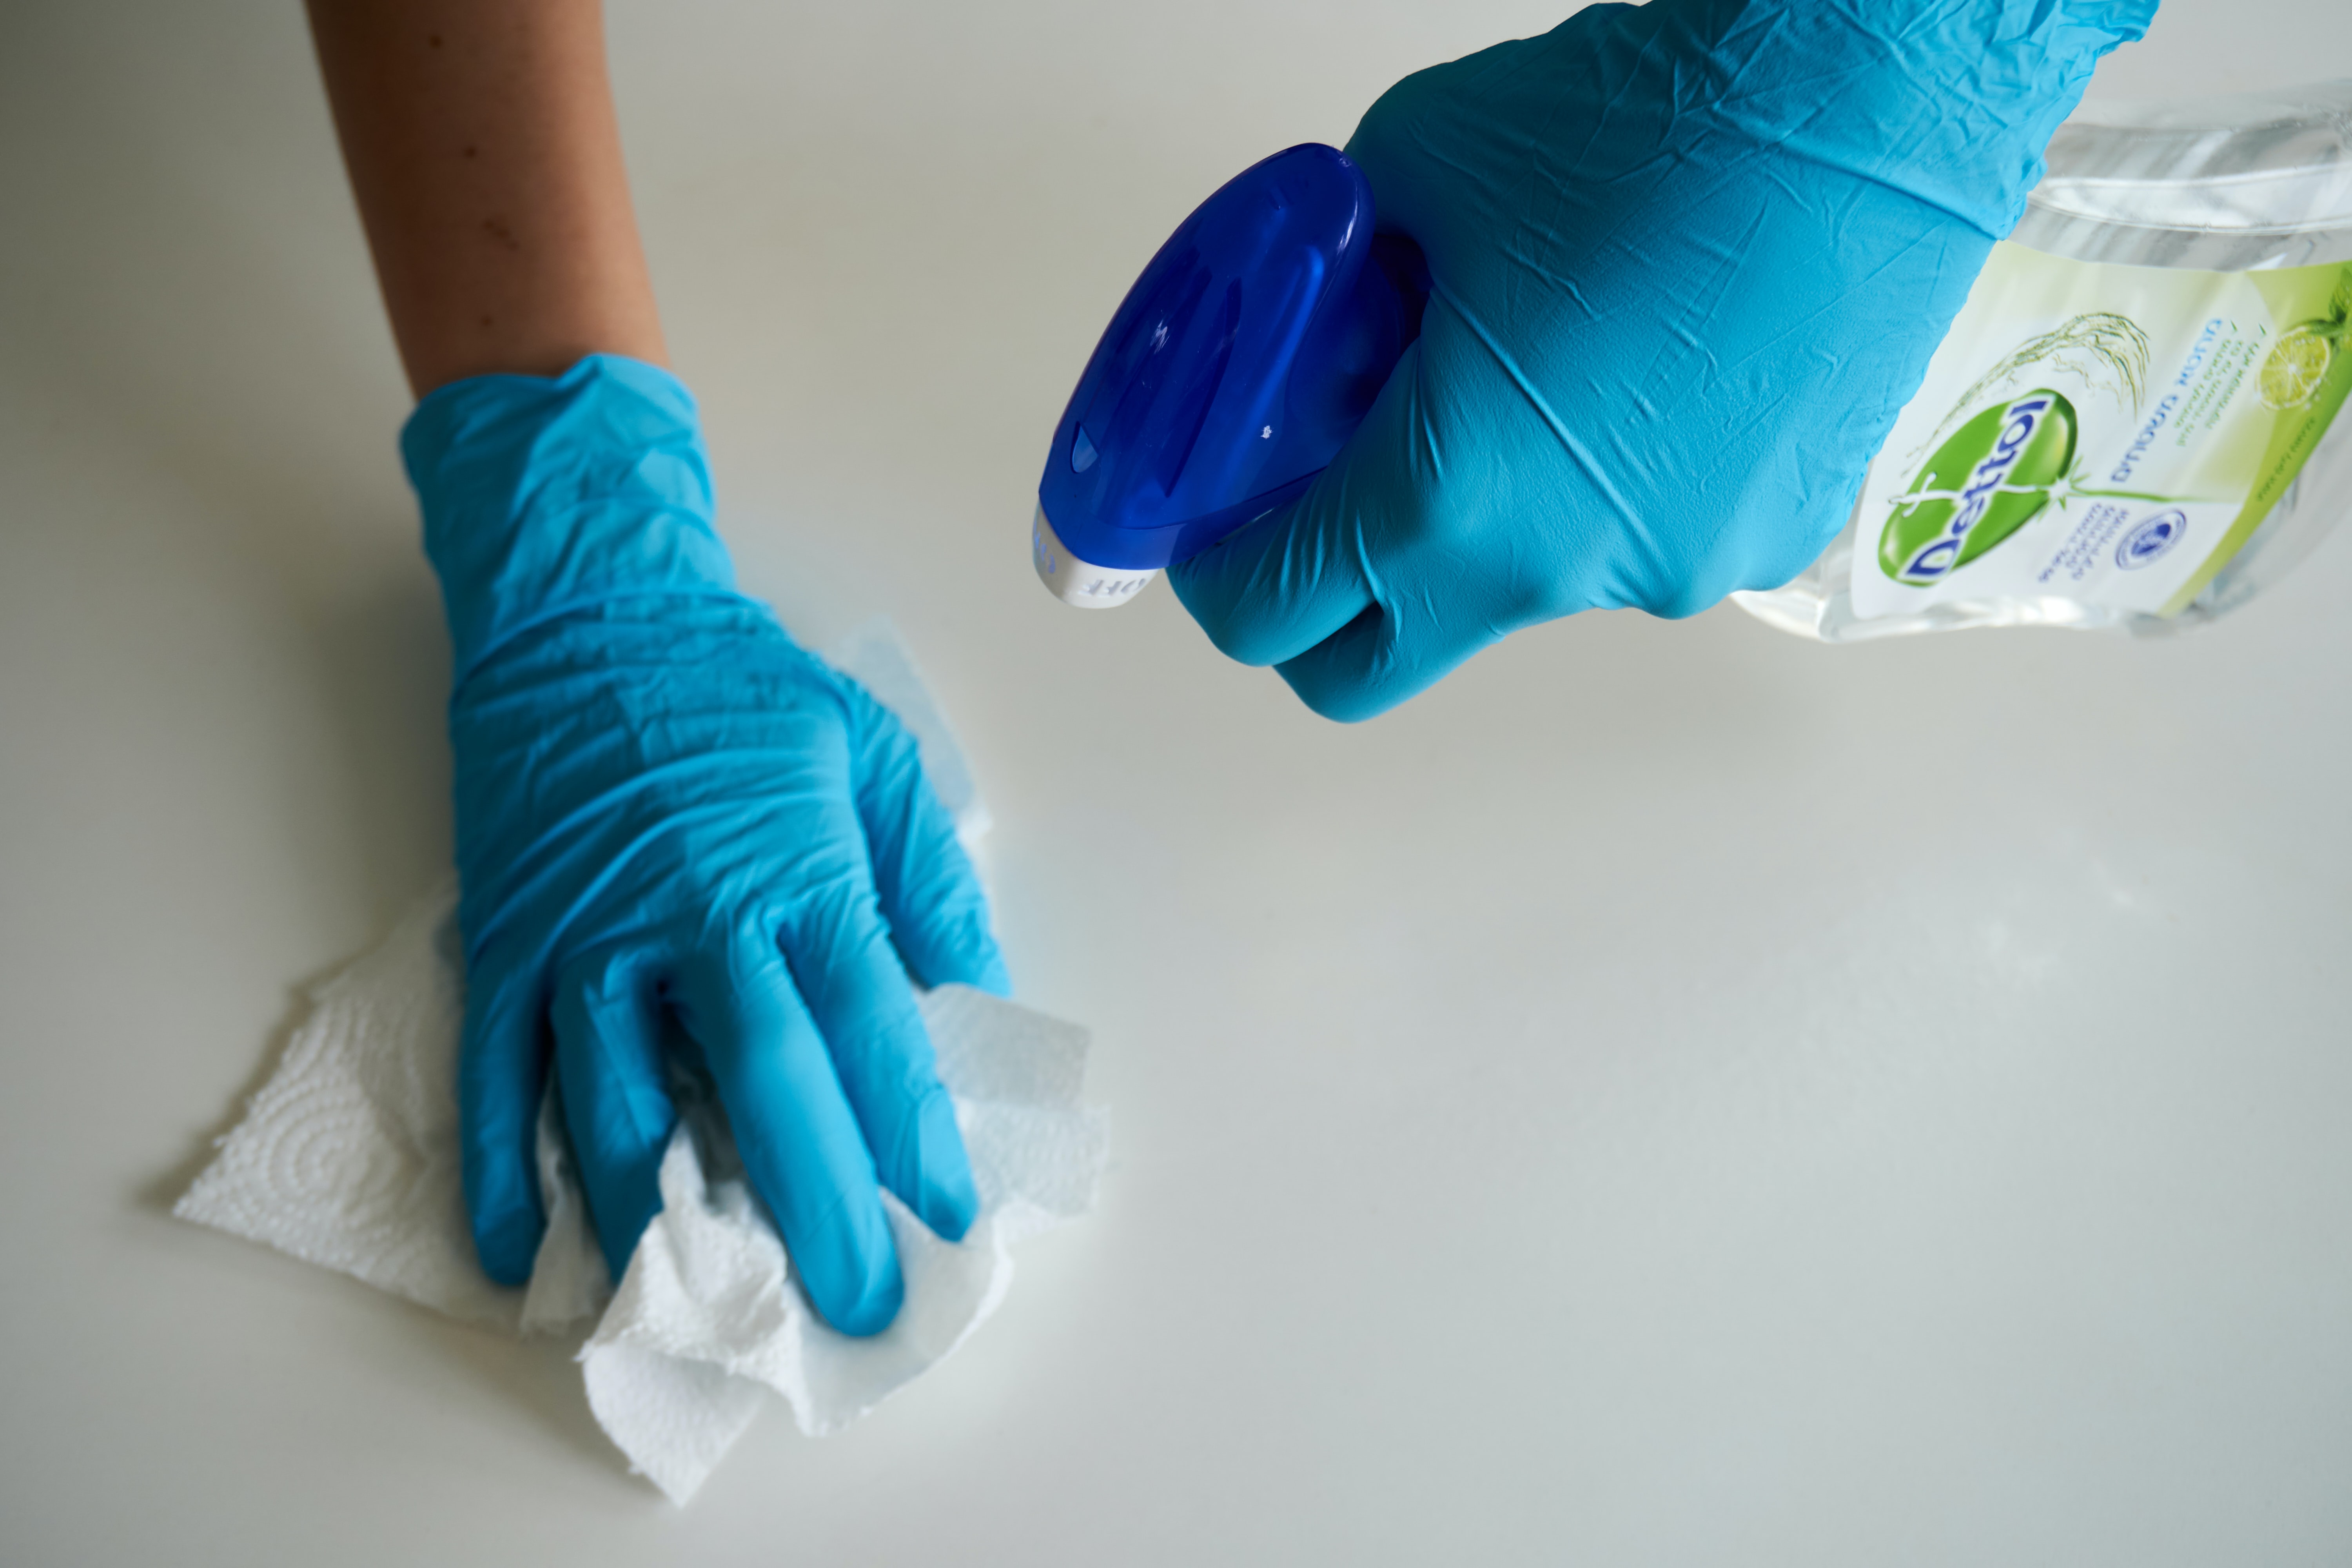 Post-Coronavirus Return To Work Cleaning Checklist